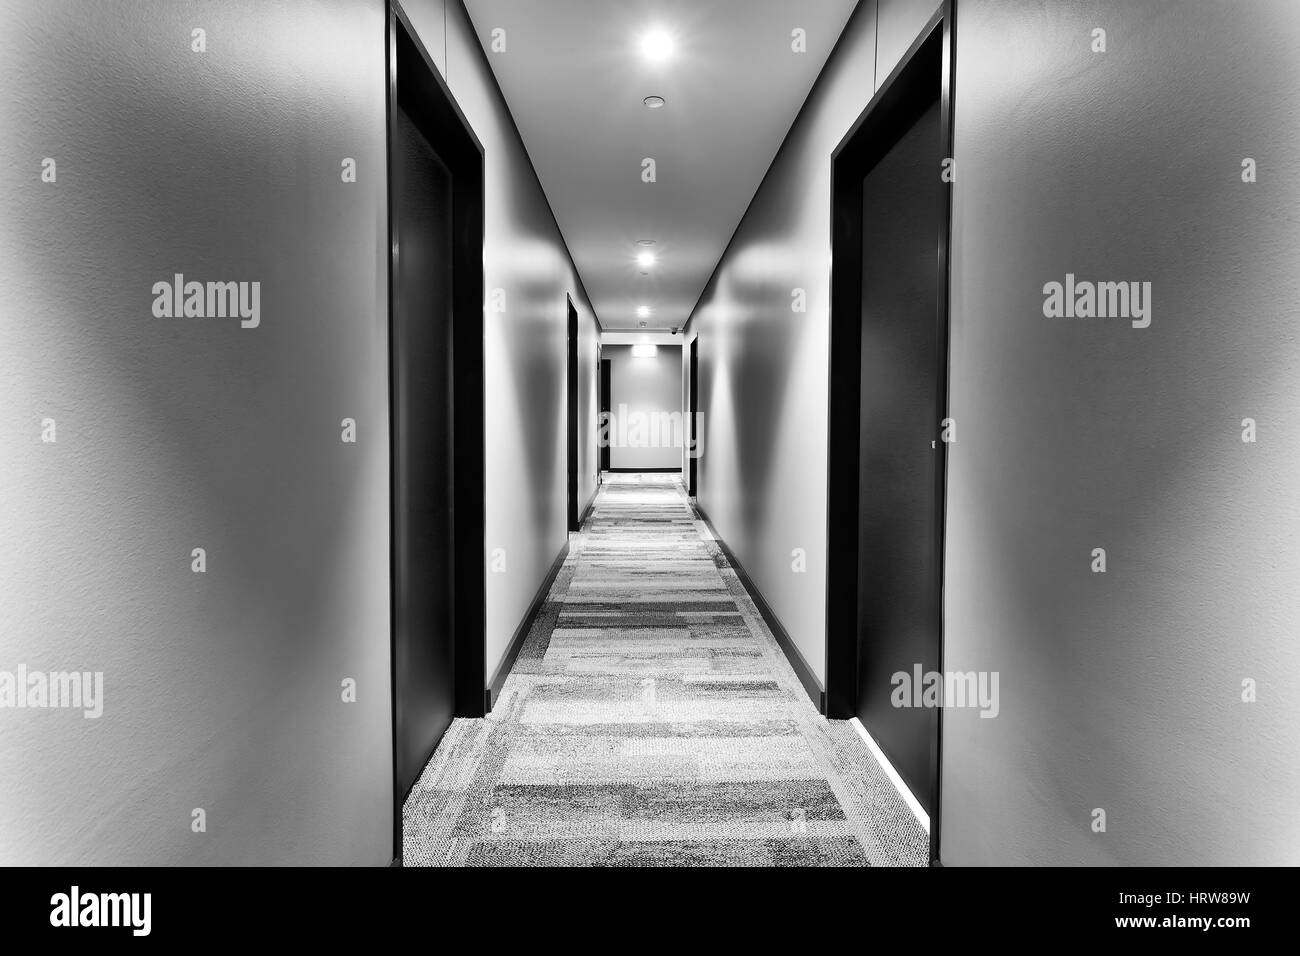 Corridoio simmetrico in moderno hotel nuovo di zecca con porte delle camere sui lati e pareti di colore bianco illuminato da luci luminose. Gli ospiti non in vista. Foto Stock